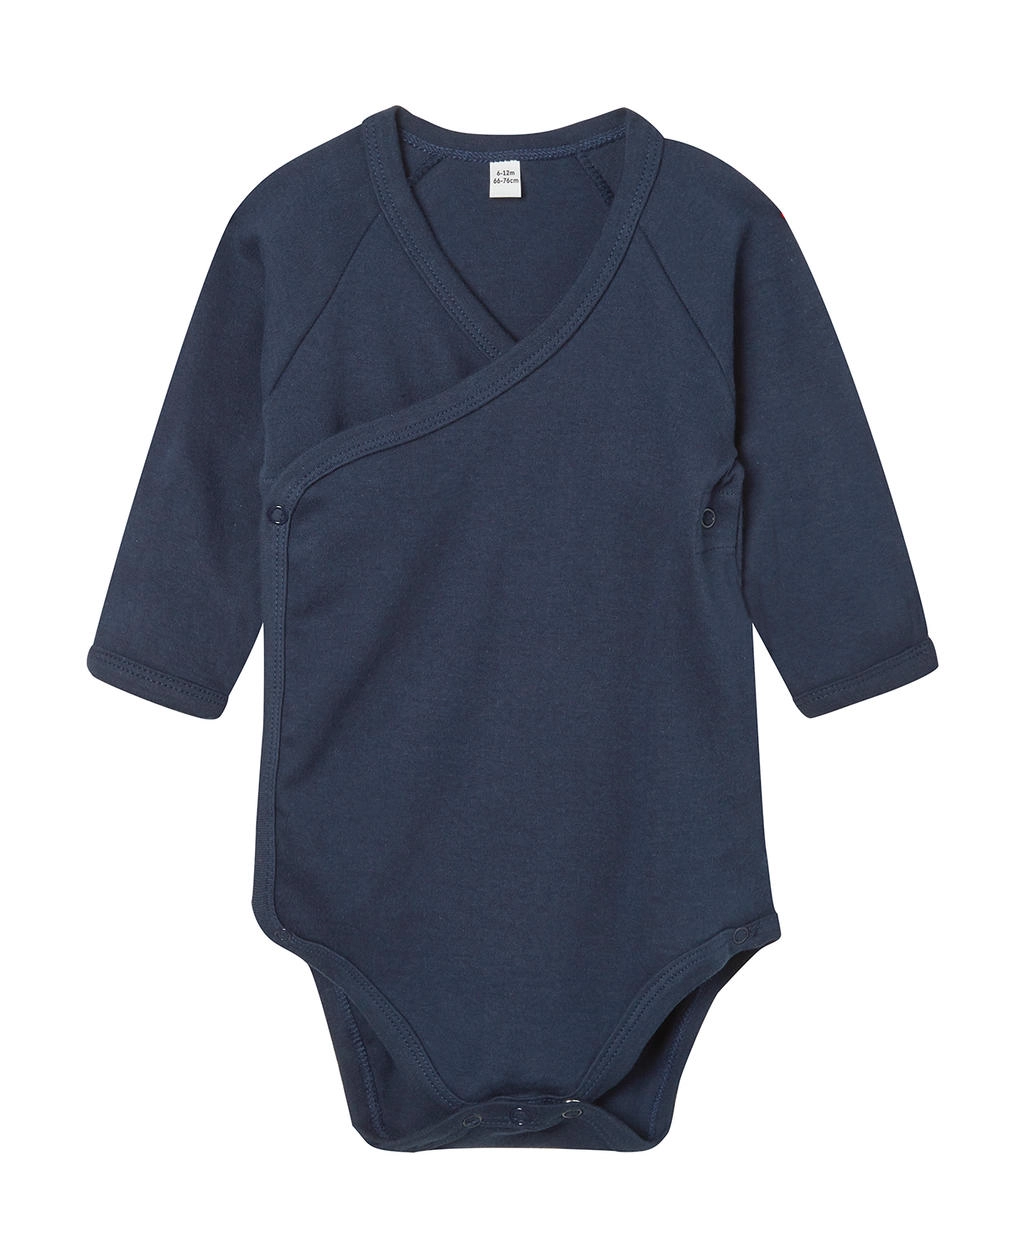 Baby Long Sleeve Kimono Bodysuit zum Besticken und Bedrucken in der Farbe Nautical Navy mit Ihren Logo, Schriftzug oder Motiv.